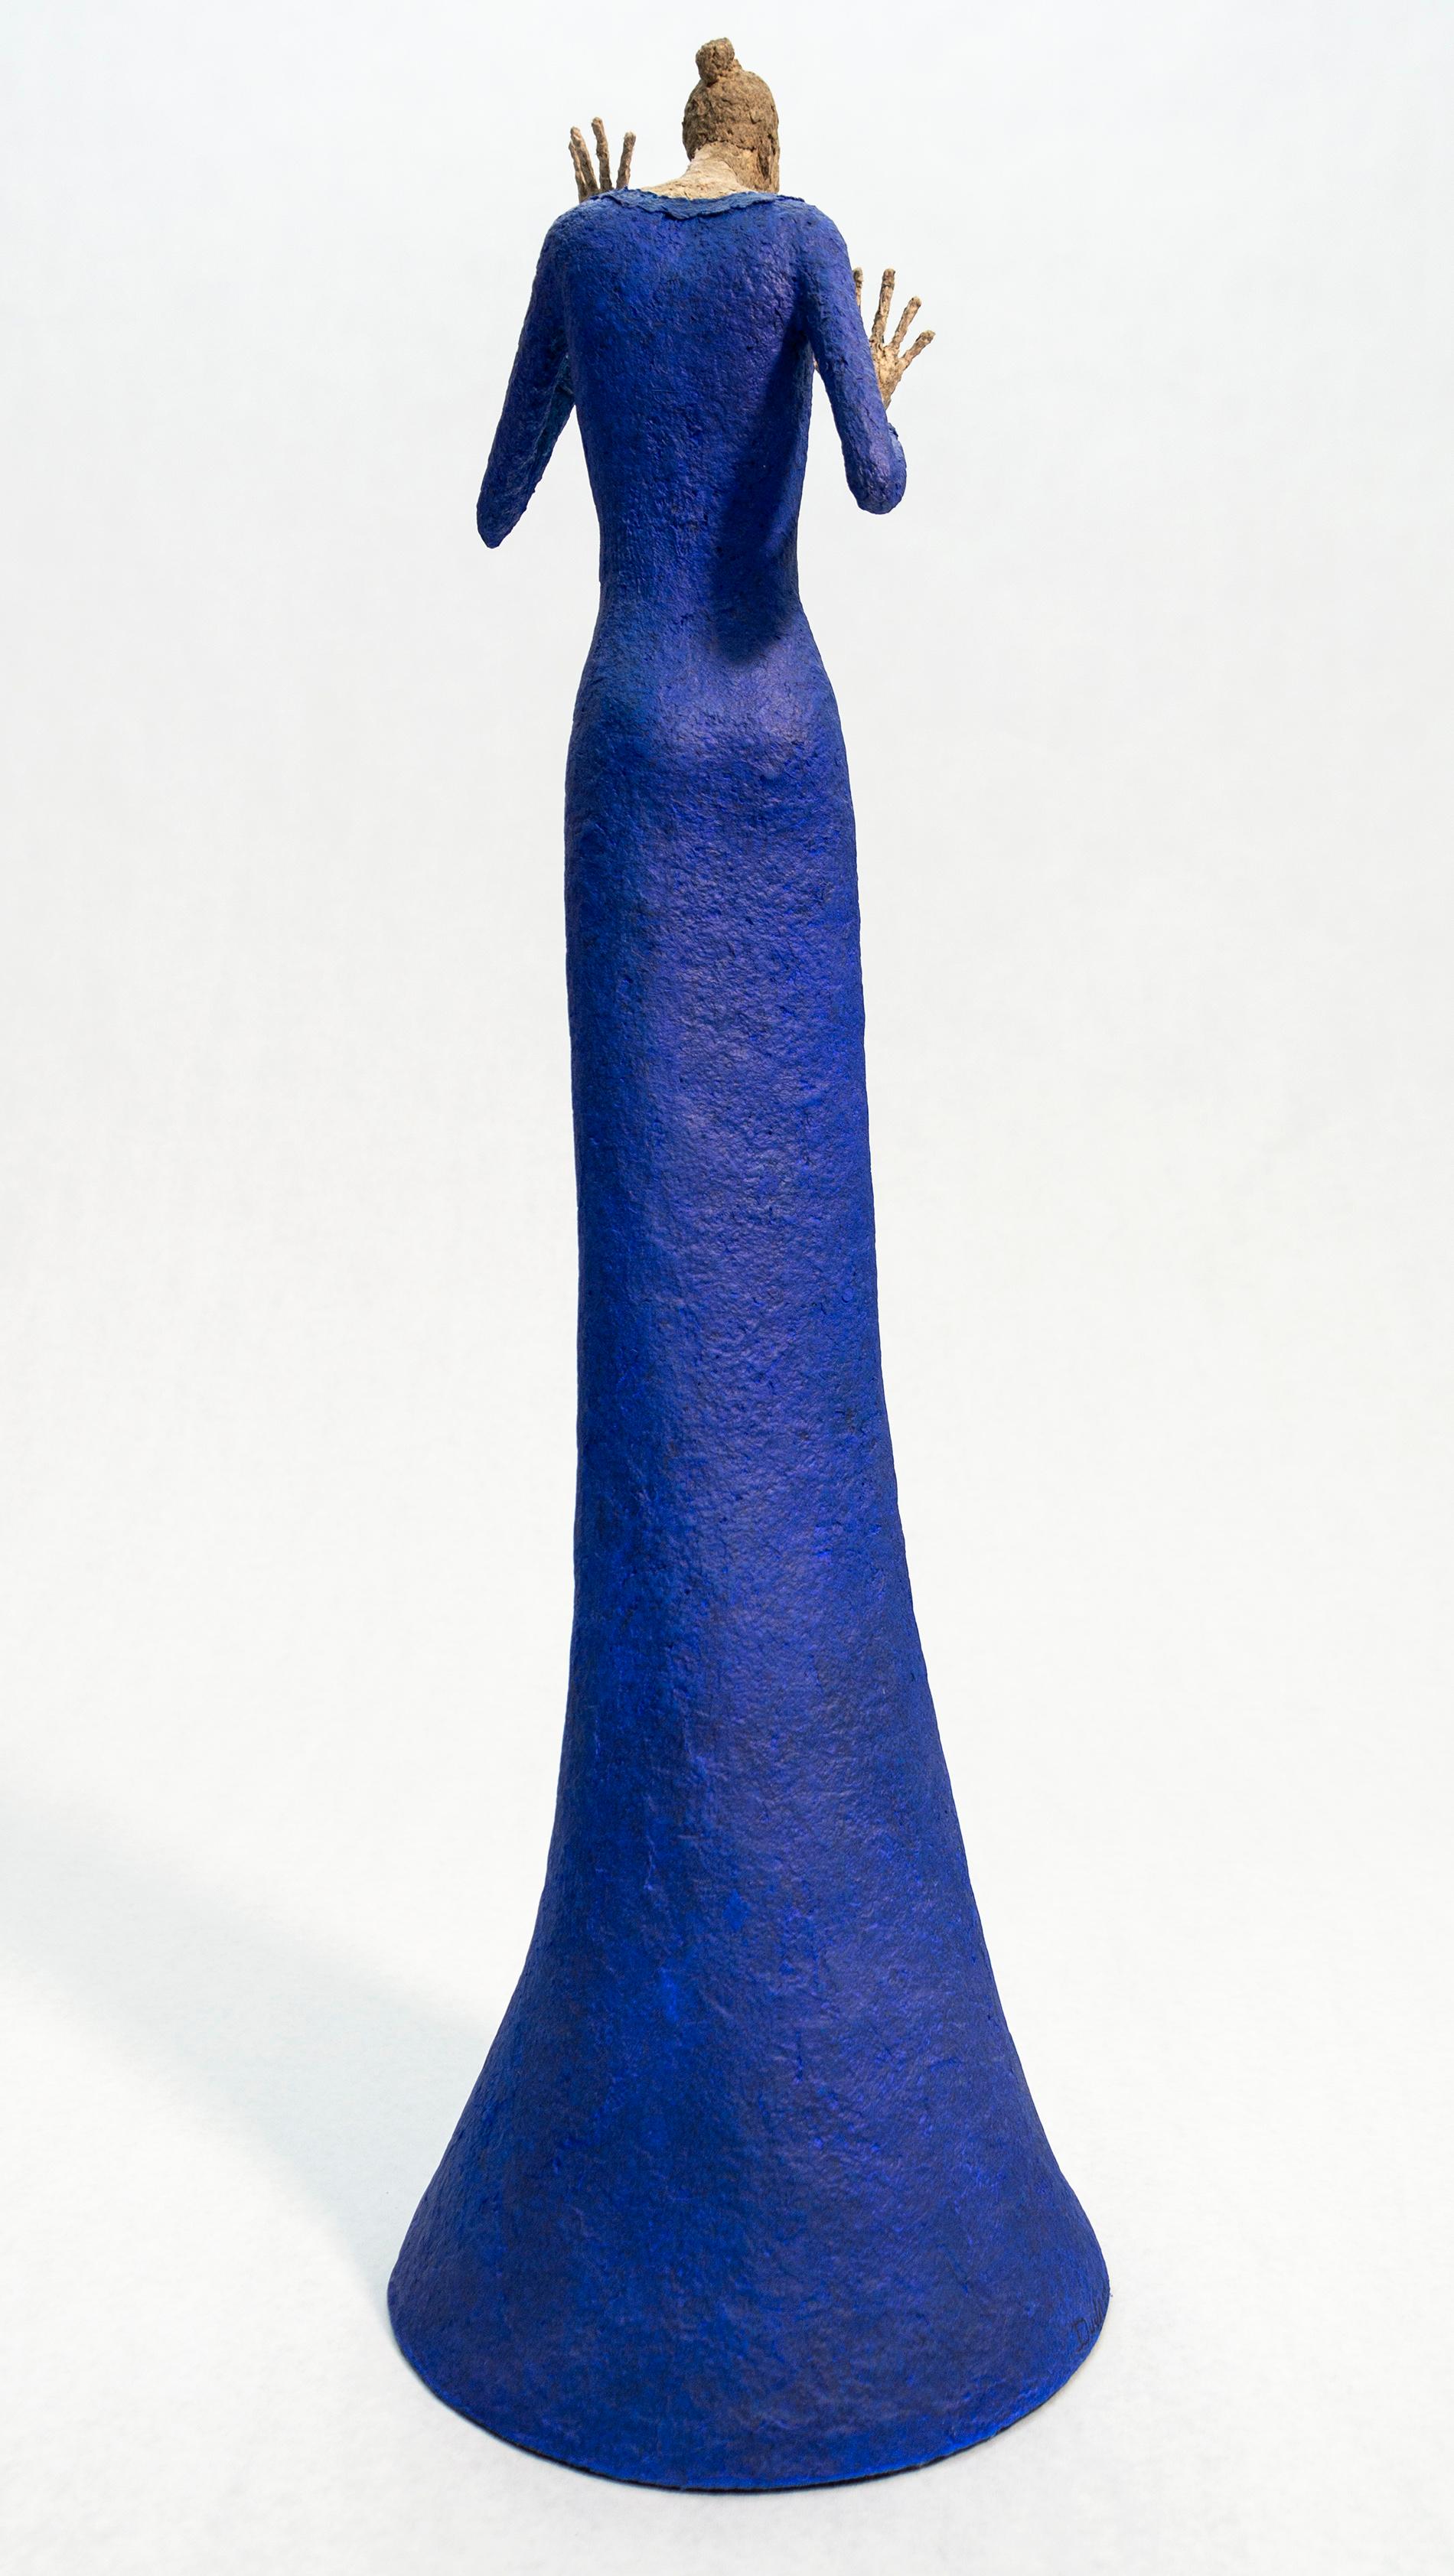 Celestine - sculpture expressive, texturée, féminine, figurative, en faïence de papier - Contemporain Sculpture par Paul Duval